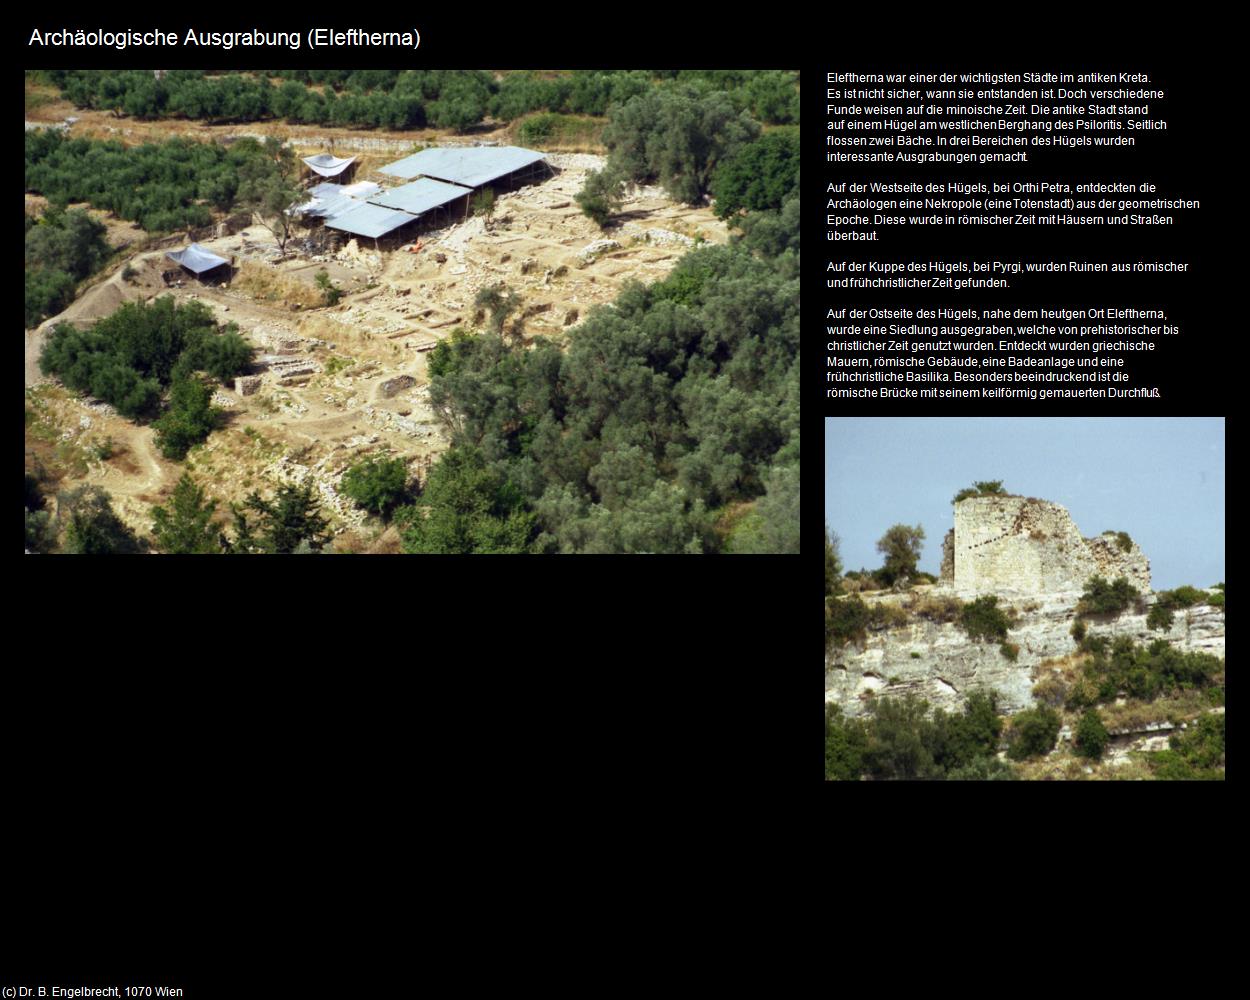 Archäologische Ausgrabung  (Eleftherna) in KRETA und SANTORIN